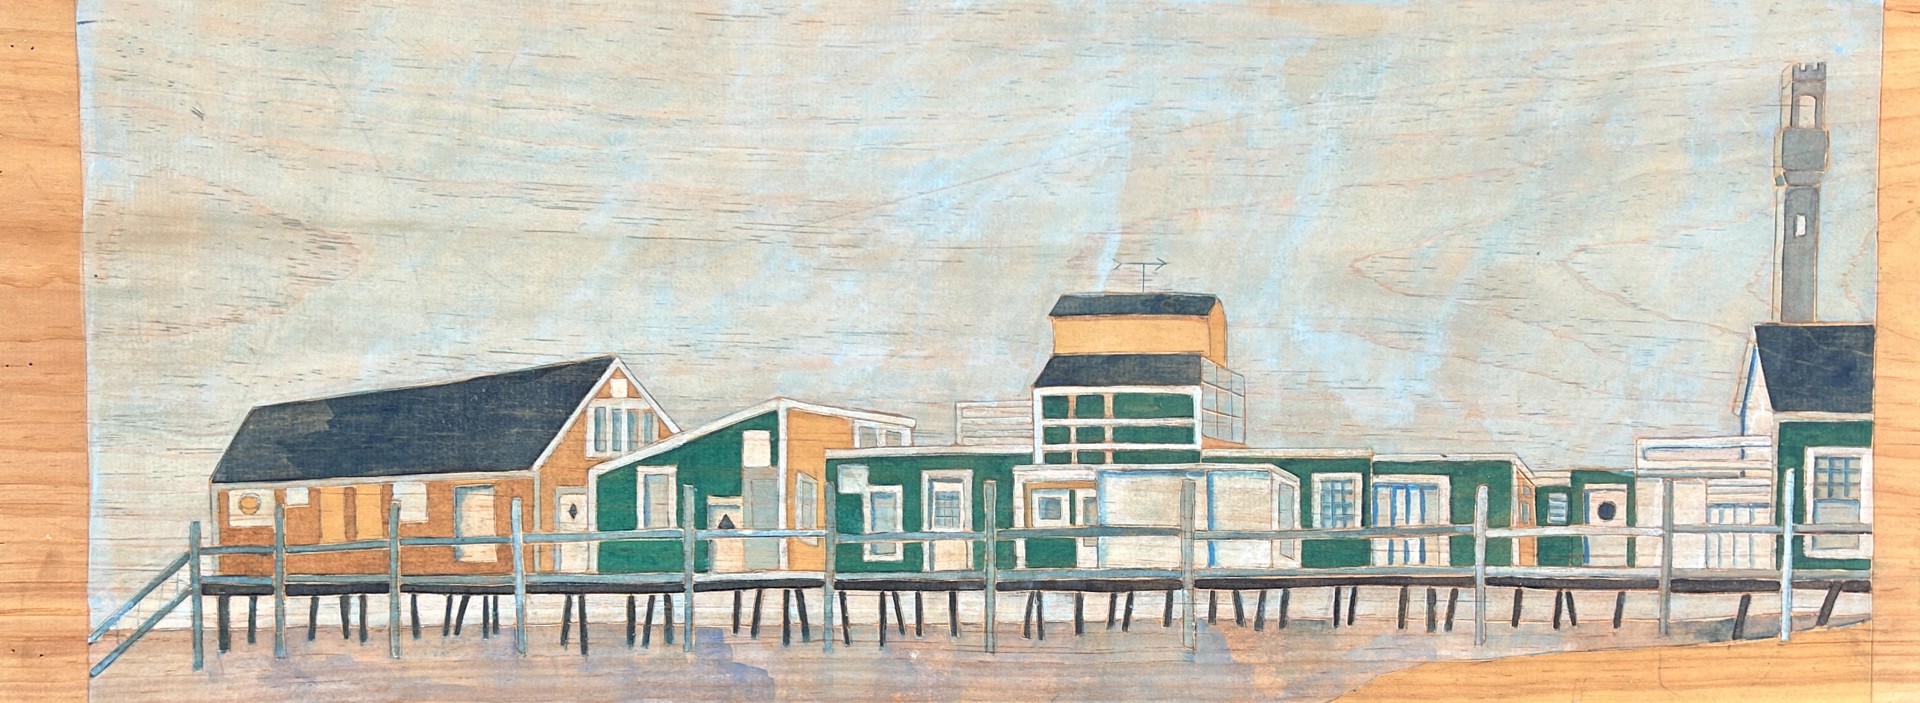 Captain Jack's Wharf by Katherine Baltivik